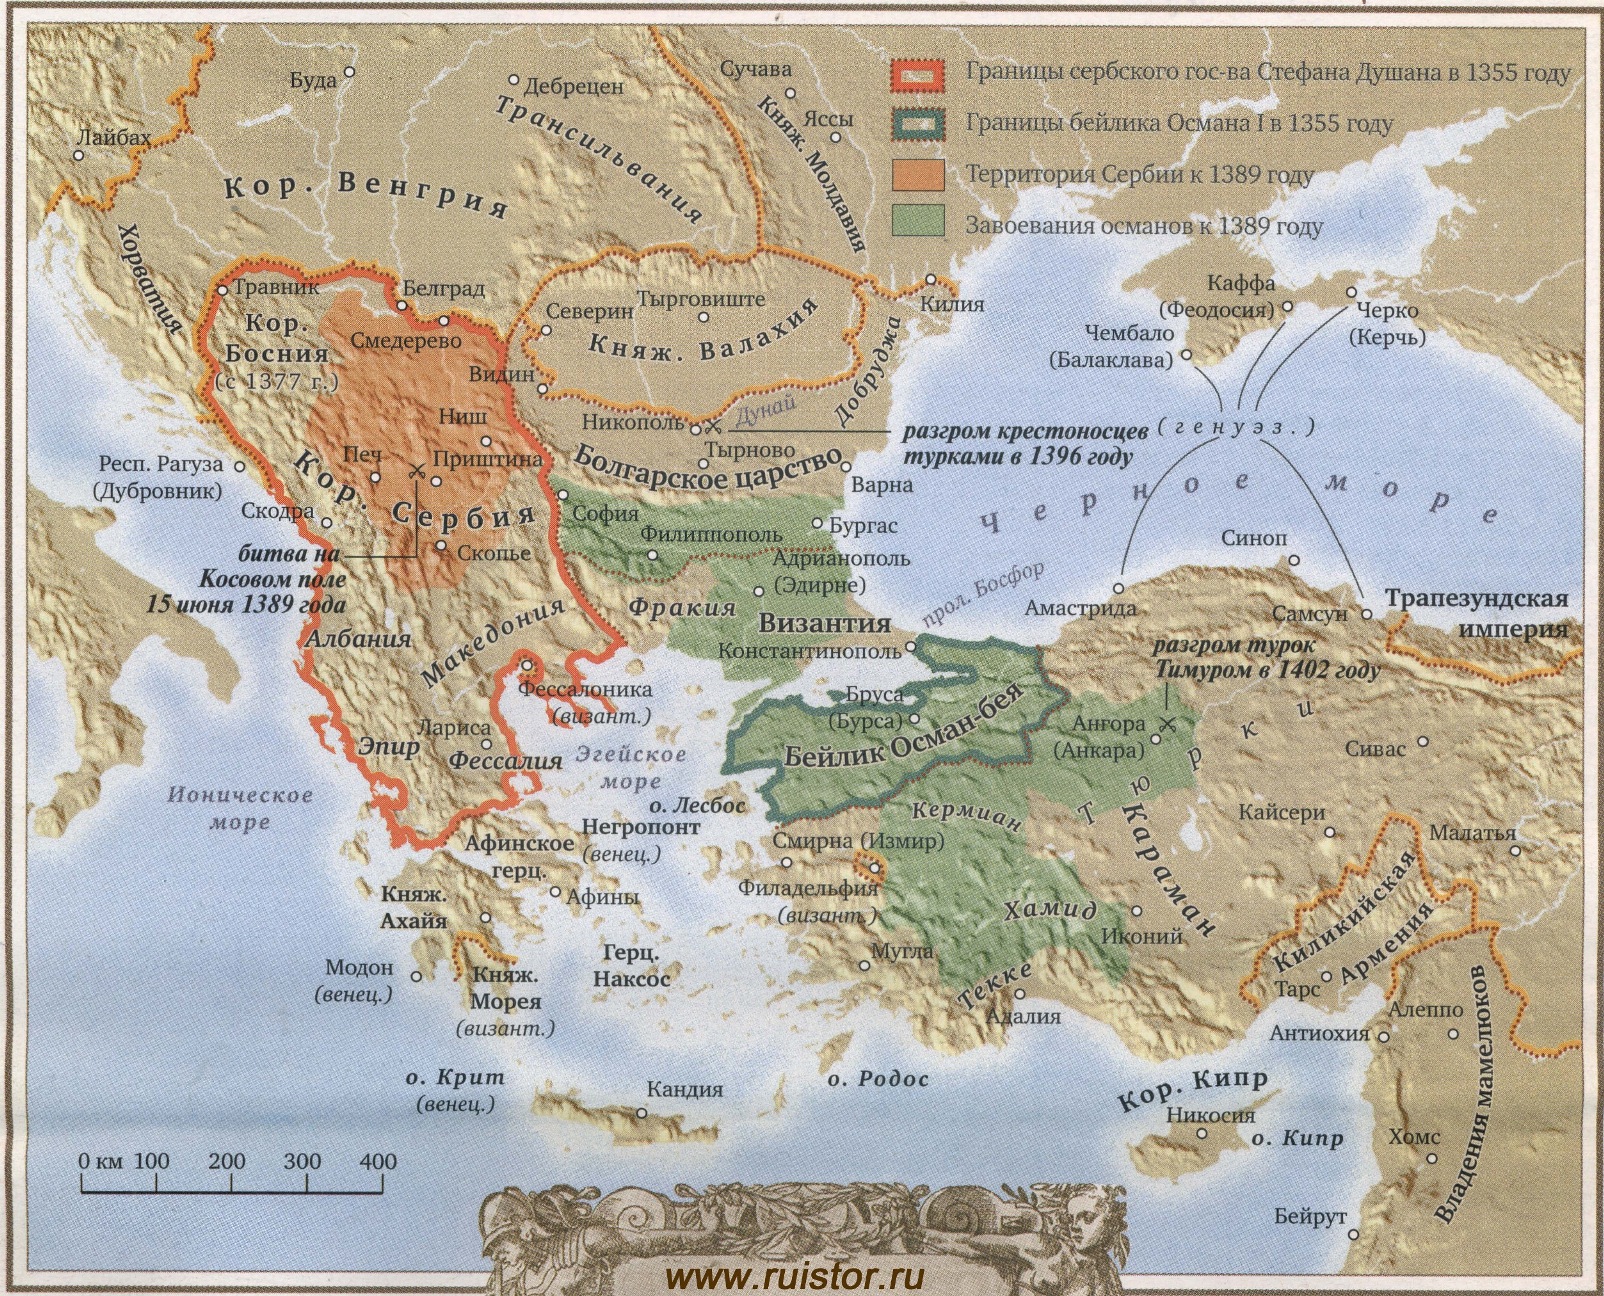 Под полою это где. Балканский полуостров 14 век карта. Балканский полуостров в средние века карта. Карта Византии 14 век. Византийская Империя карта 14 век.